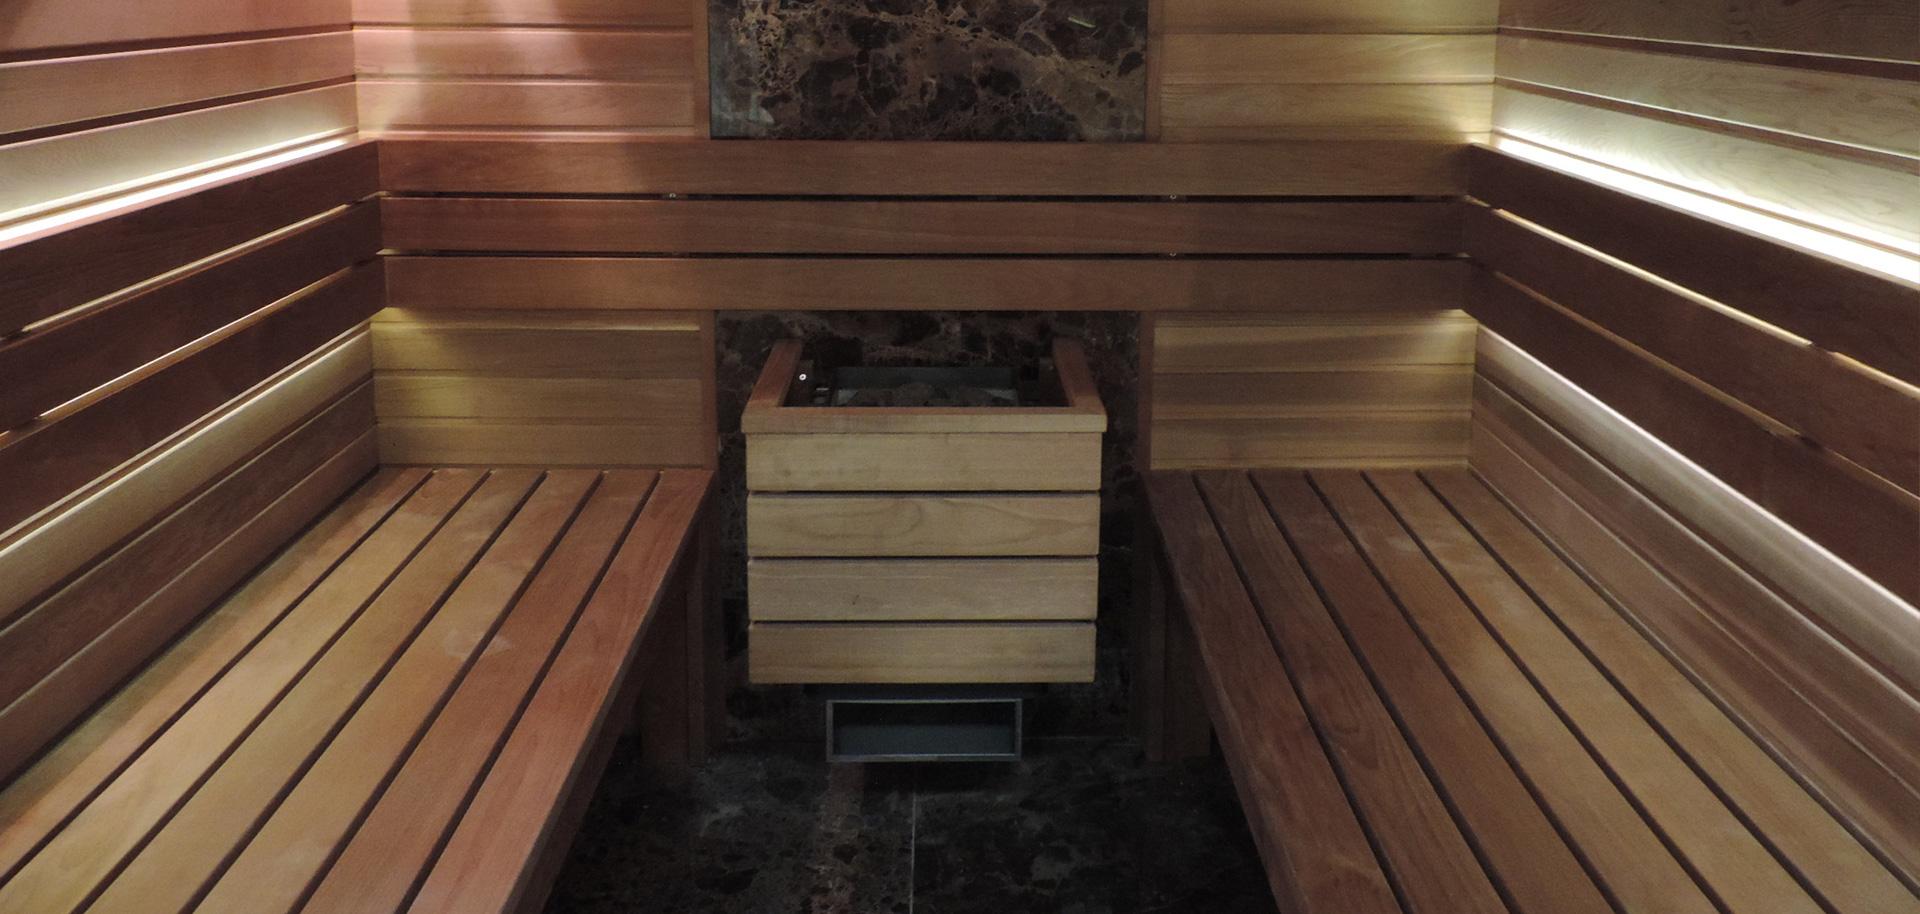 producent basenów, budowa sauny fińskiej